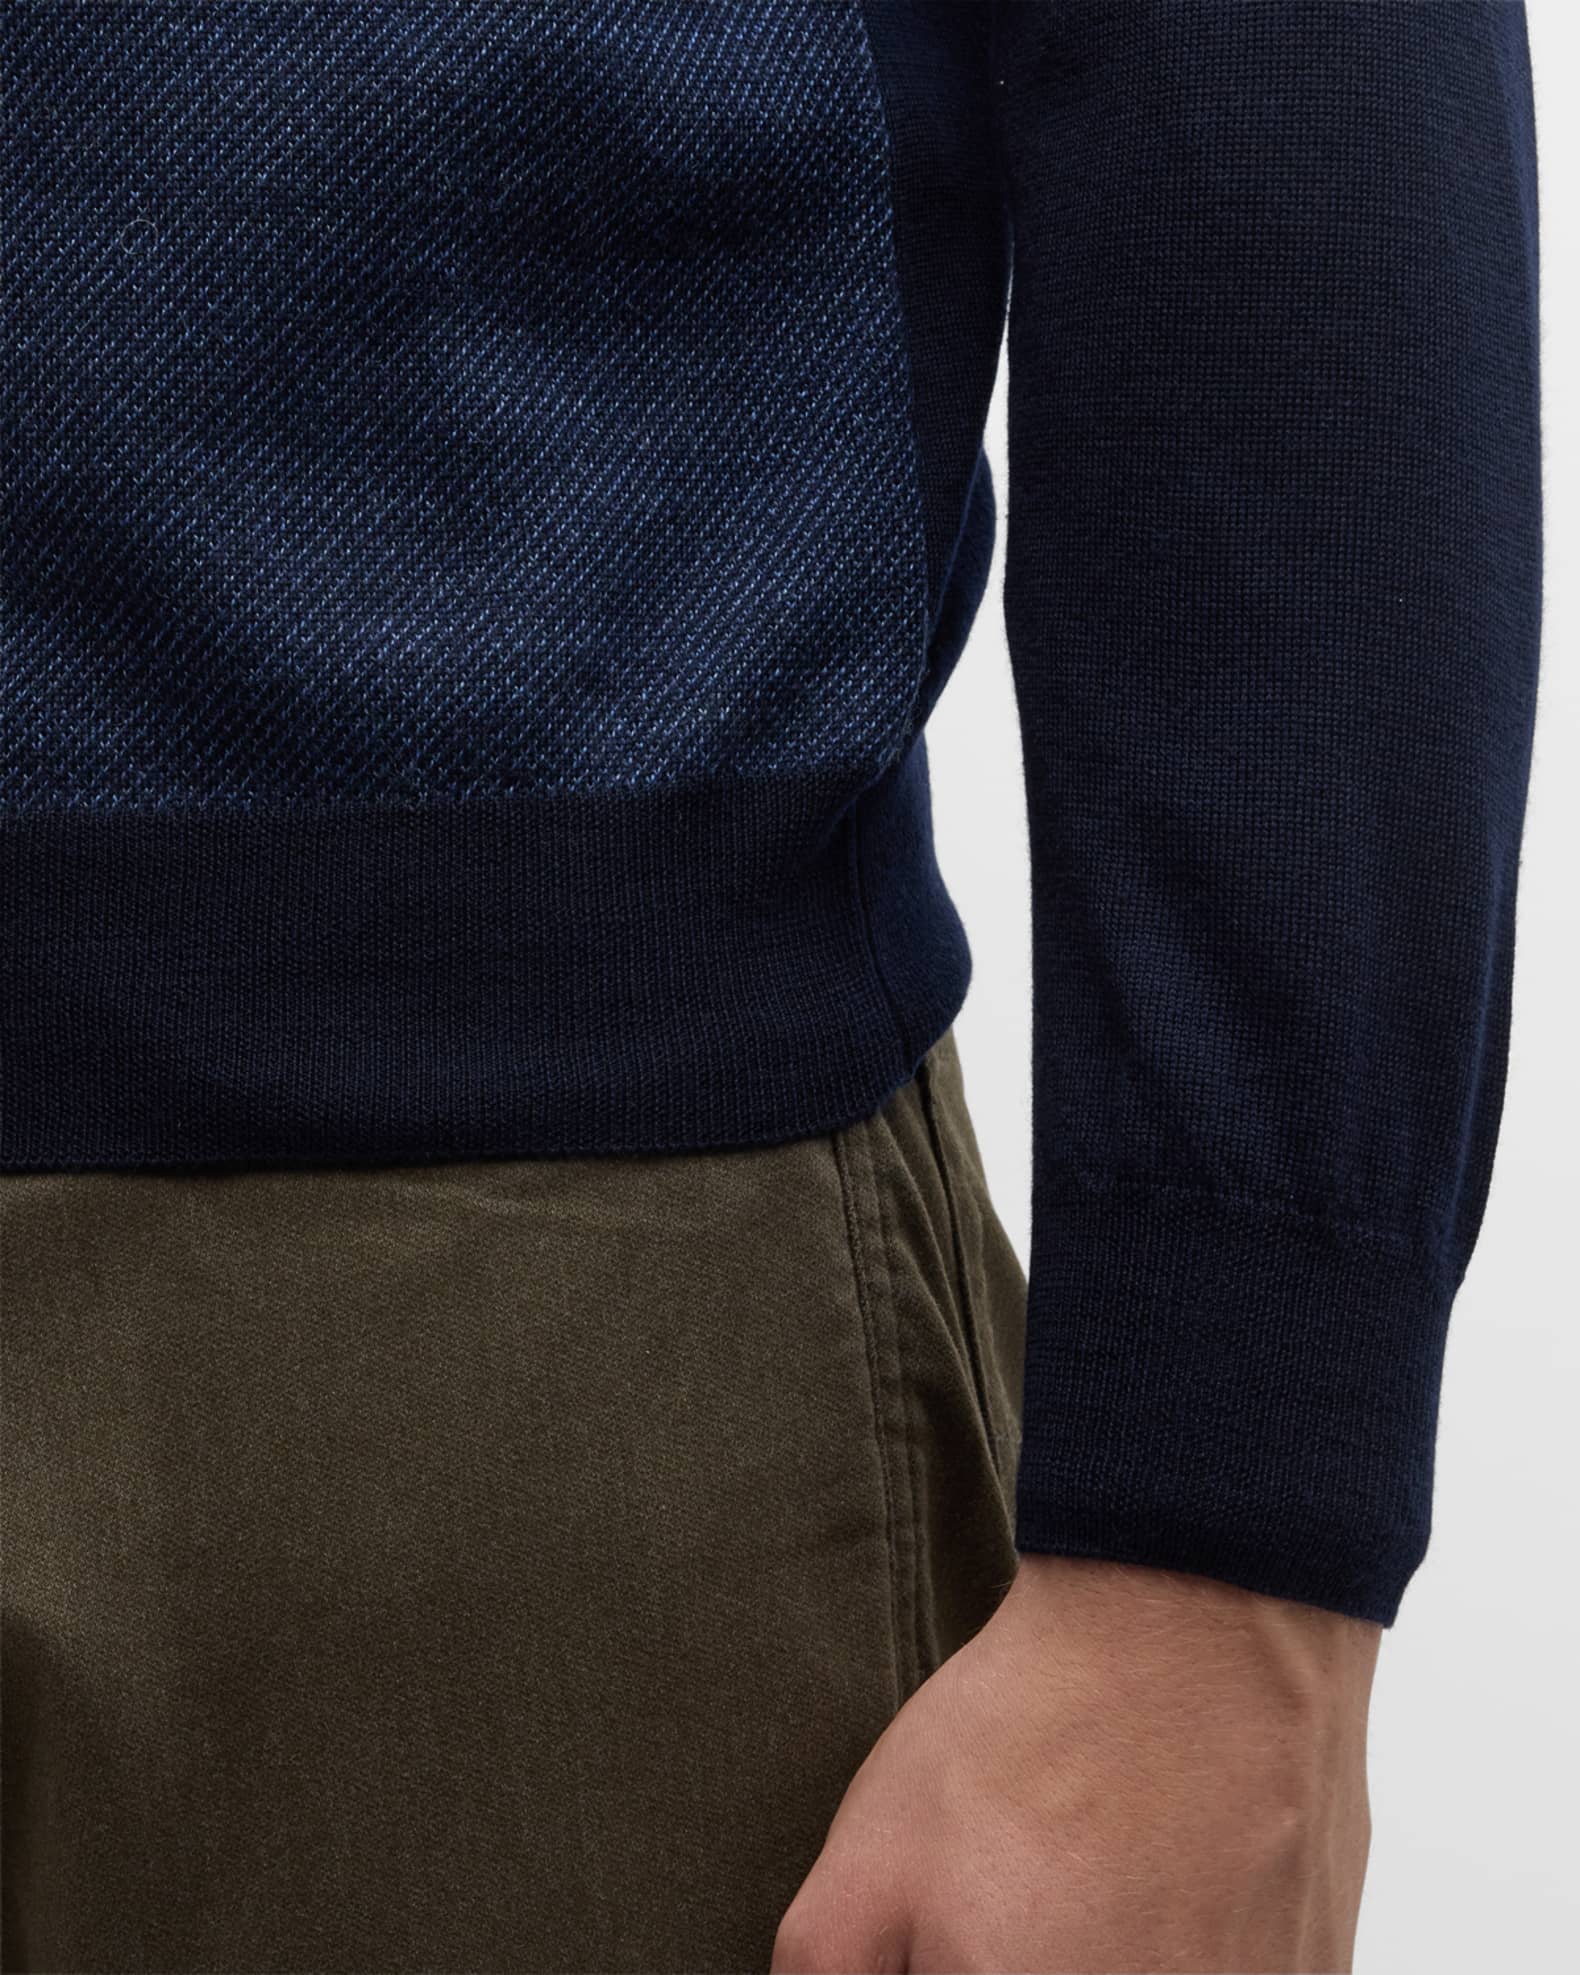 Canali Men's Wool Quarter-Zip Sweater | Neiman Marcus